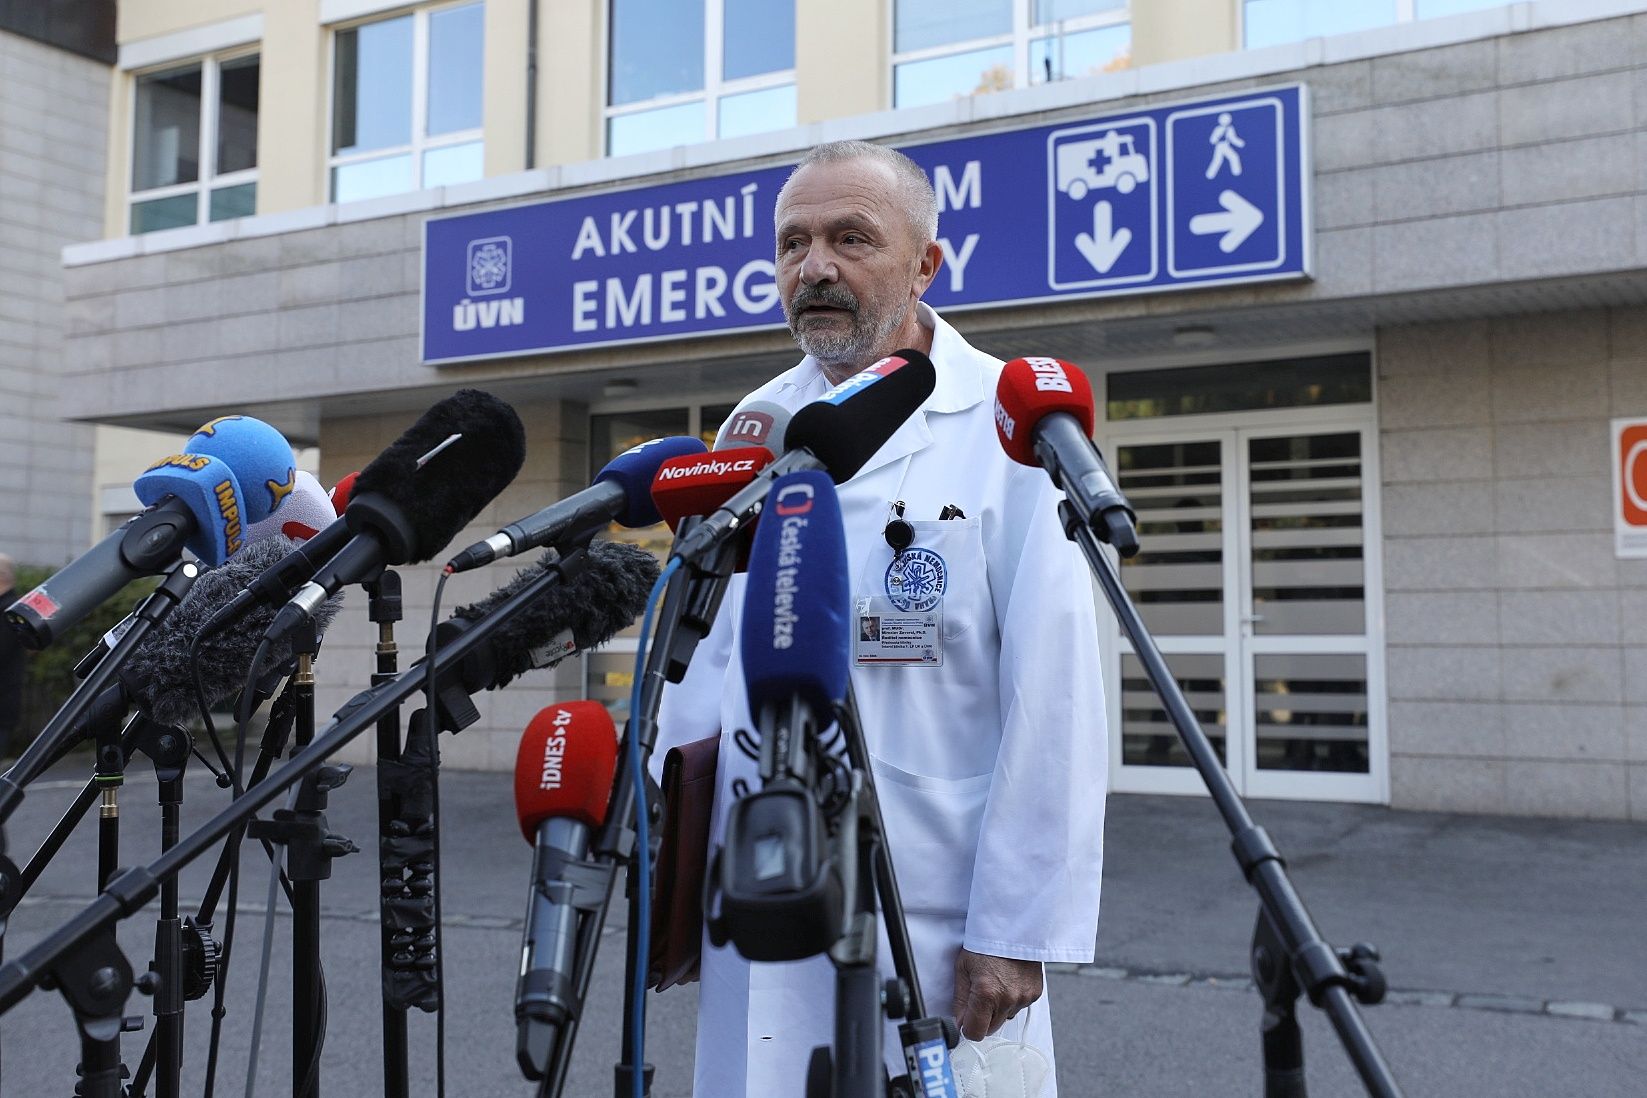 Miloš Zeman kann mehrere Wochen im Krankenhaus bleiben.  Arzt weigert sich, Diagnose zu veröffentlichen